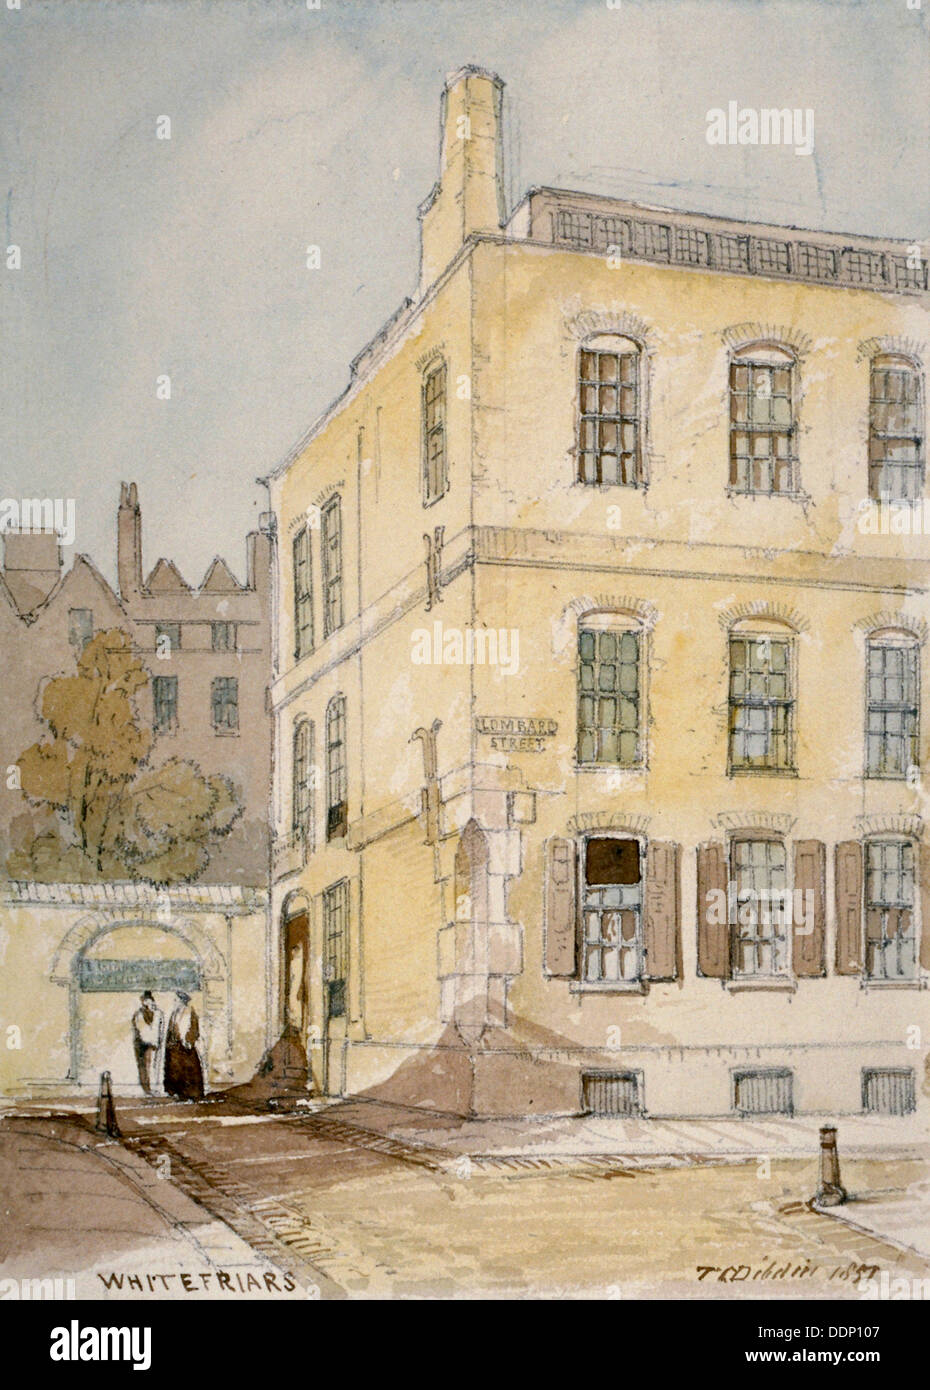 Vista di Whitefriars che mostra l'angolo di Lombard Street, City of London, 1851. Artista: Thomas Colman Dibdin Foto Stock